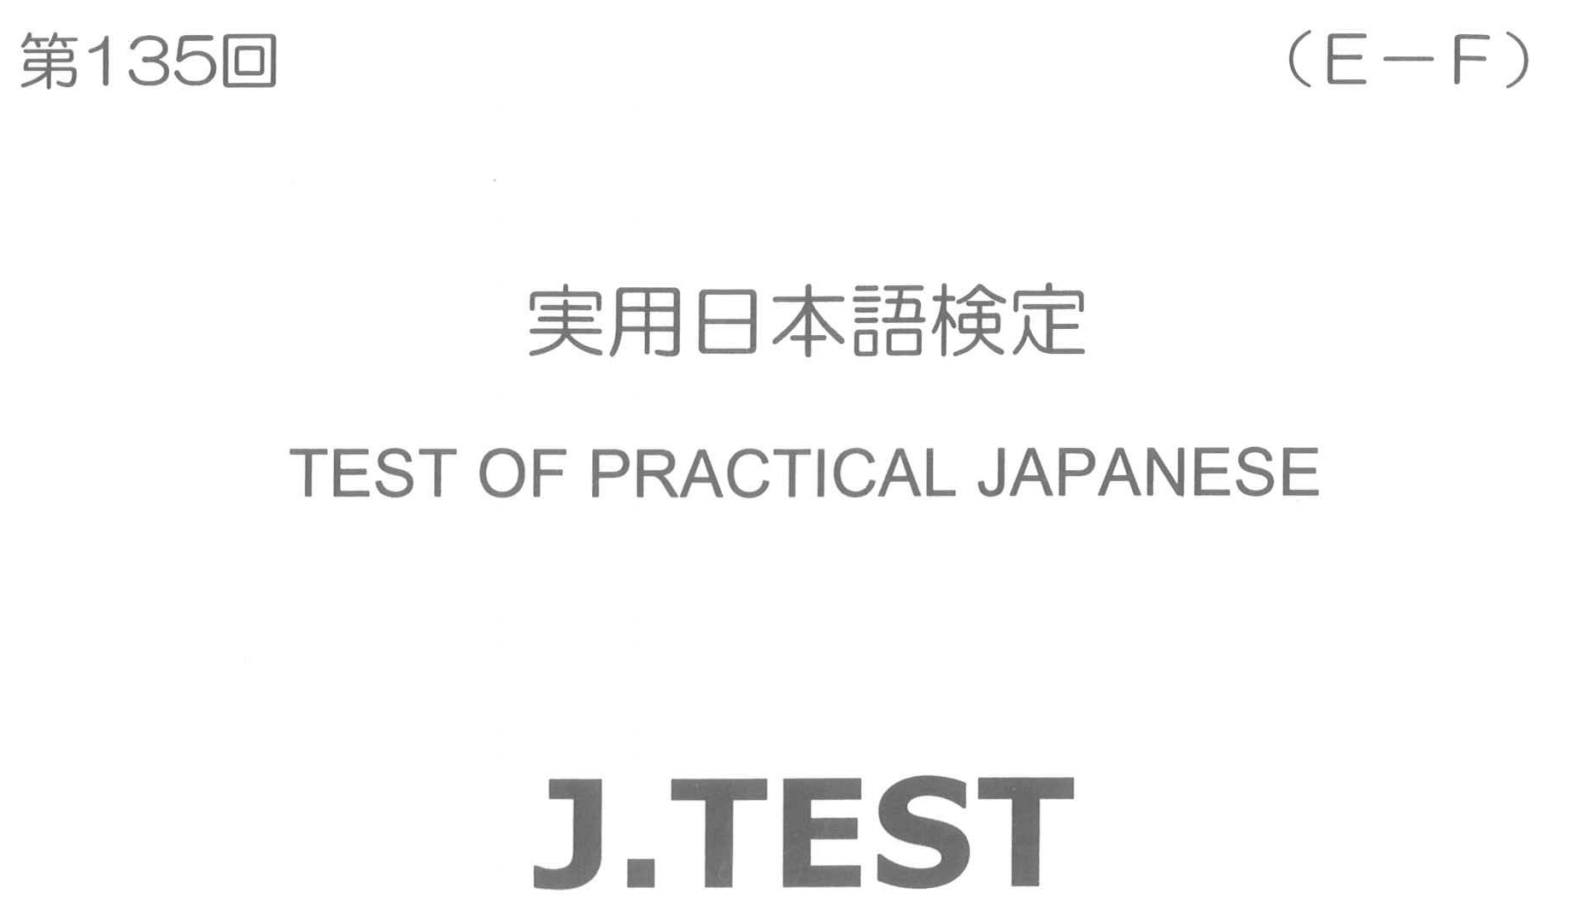 2017年 J.TEST 实用日本语检定（E-F级）   第135回考试